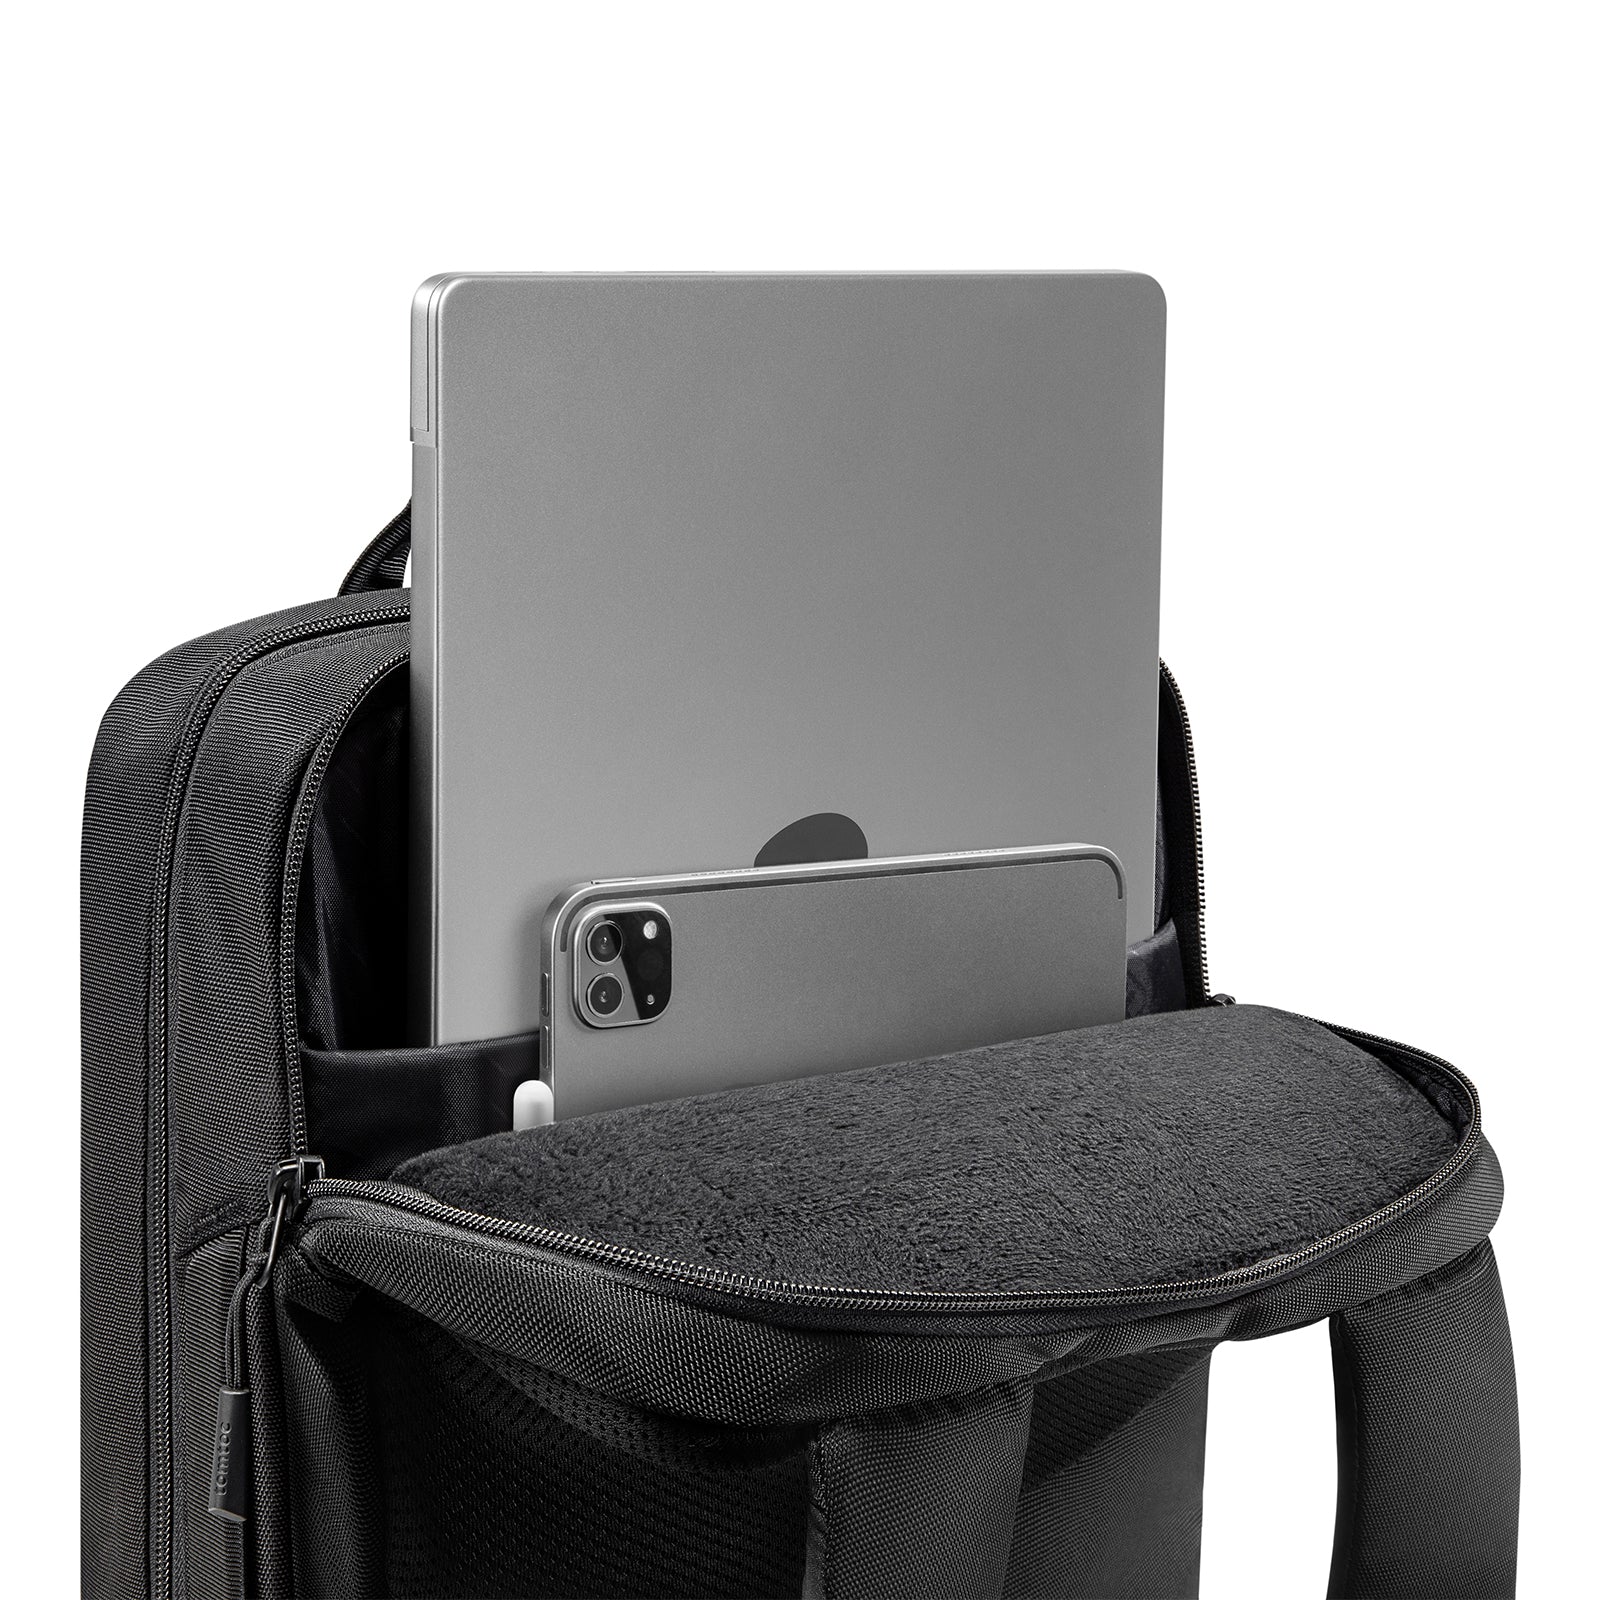 Navigator-T66 Travel Laptop Backpack 40L